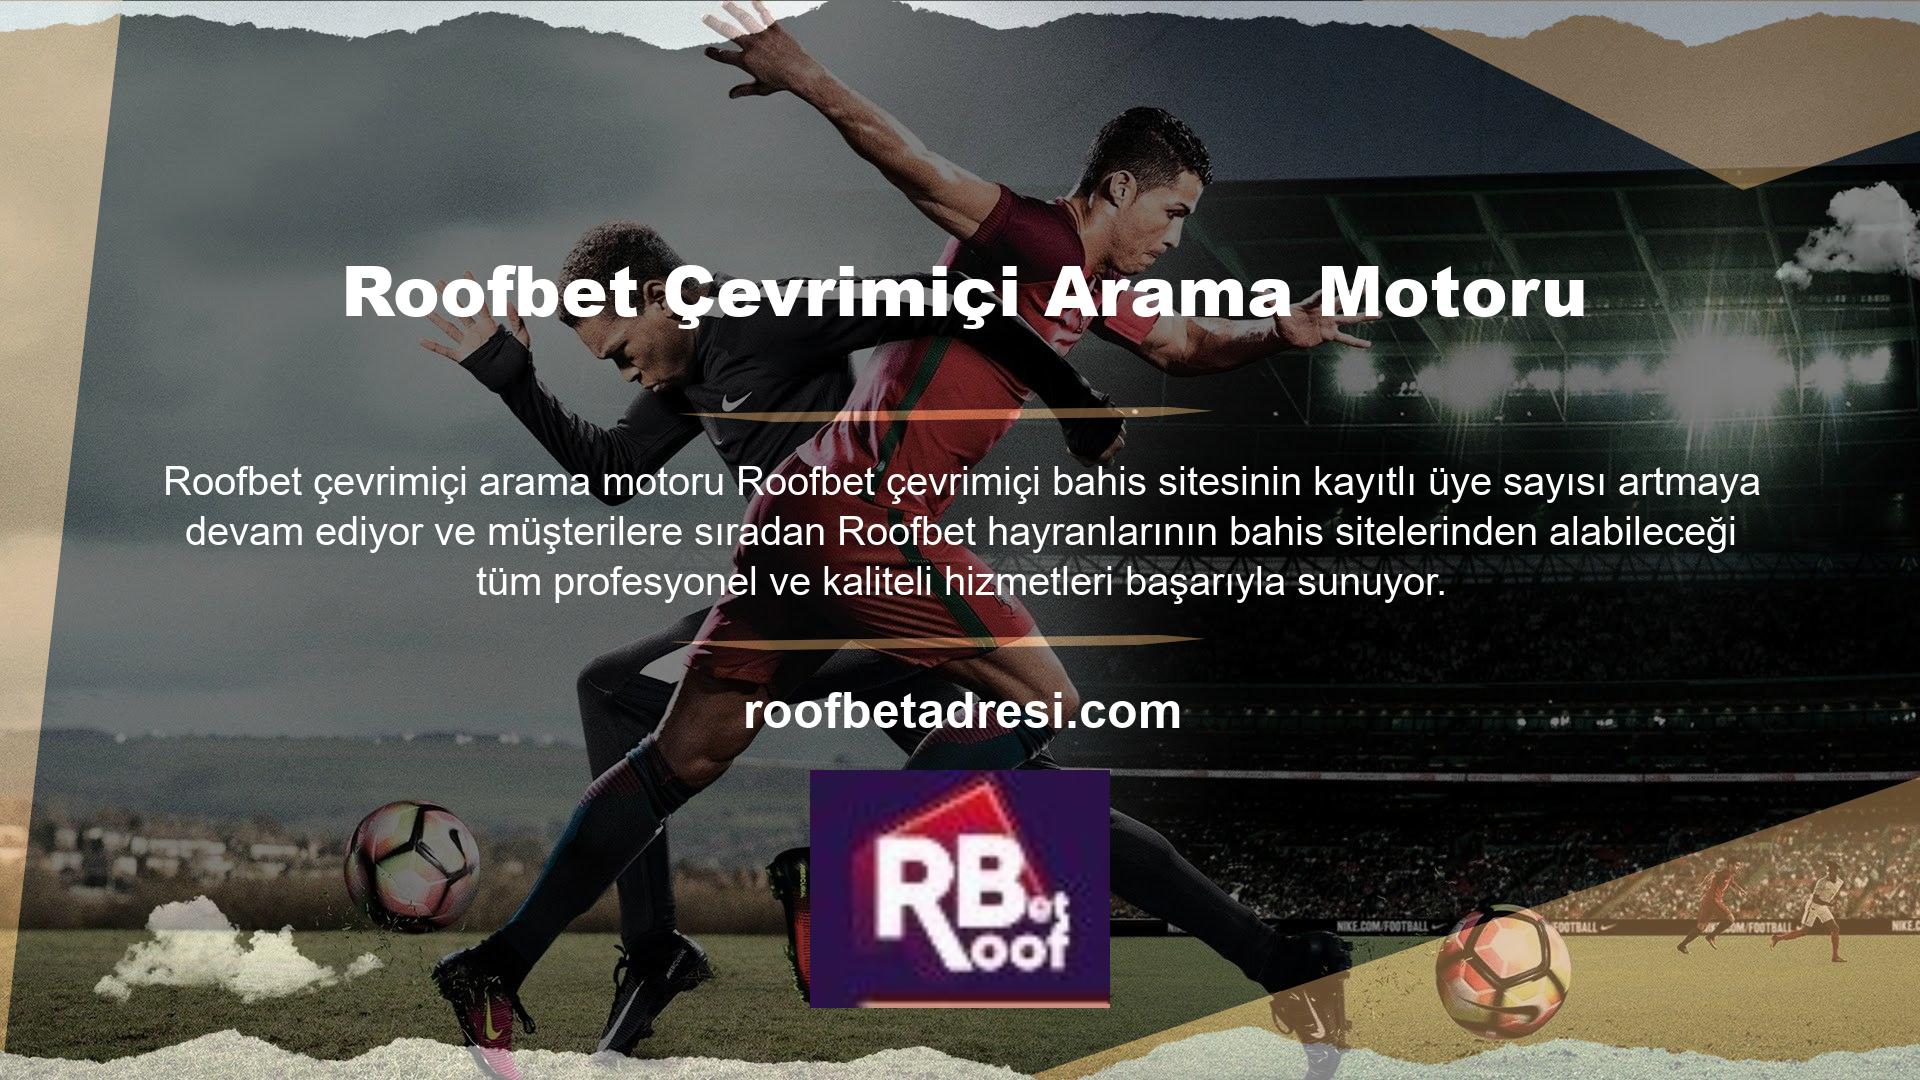 Roofbet web sitesi, kurulduğu günden bu yana Türk casino endüstrisindeki en popüler Roofbet platformlarından biri olmuştur ve hala birçok oyuncuyu kendine çekmektedir